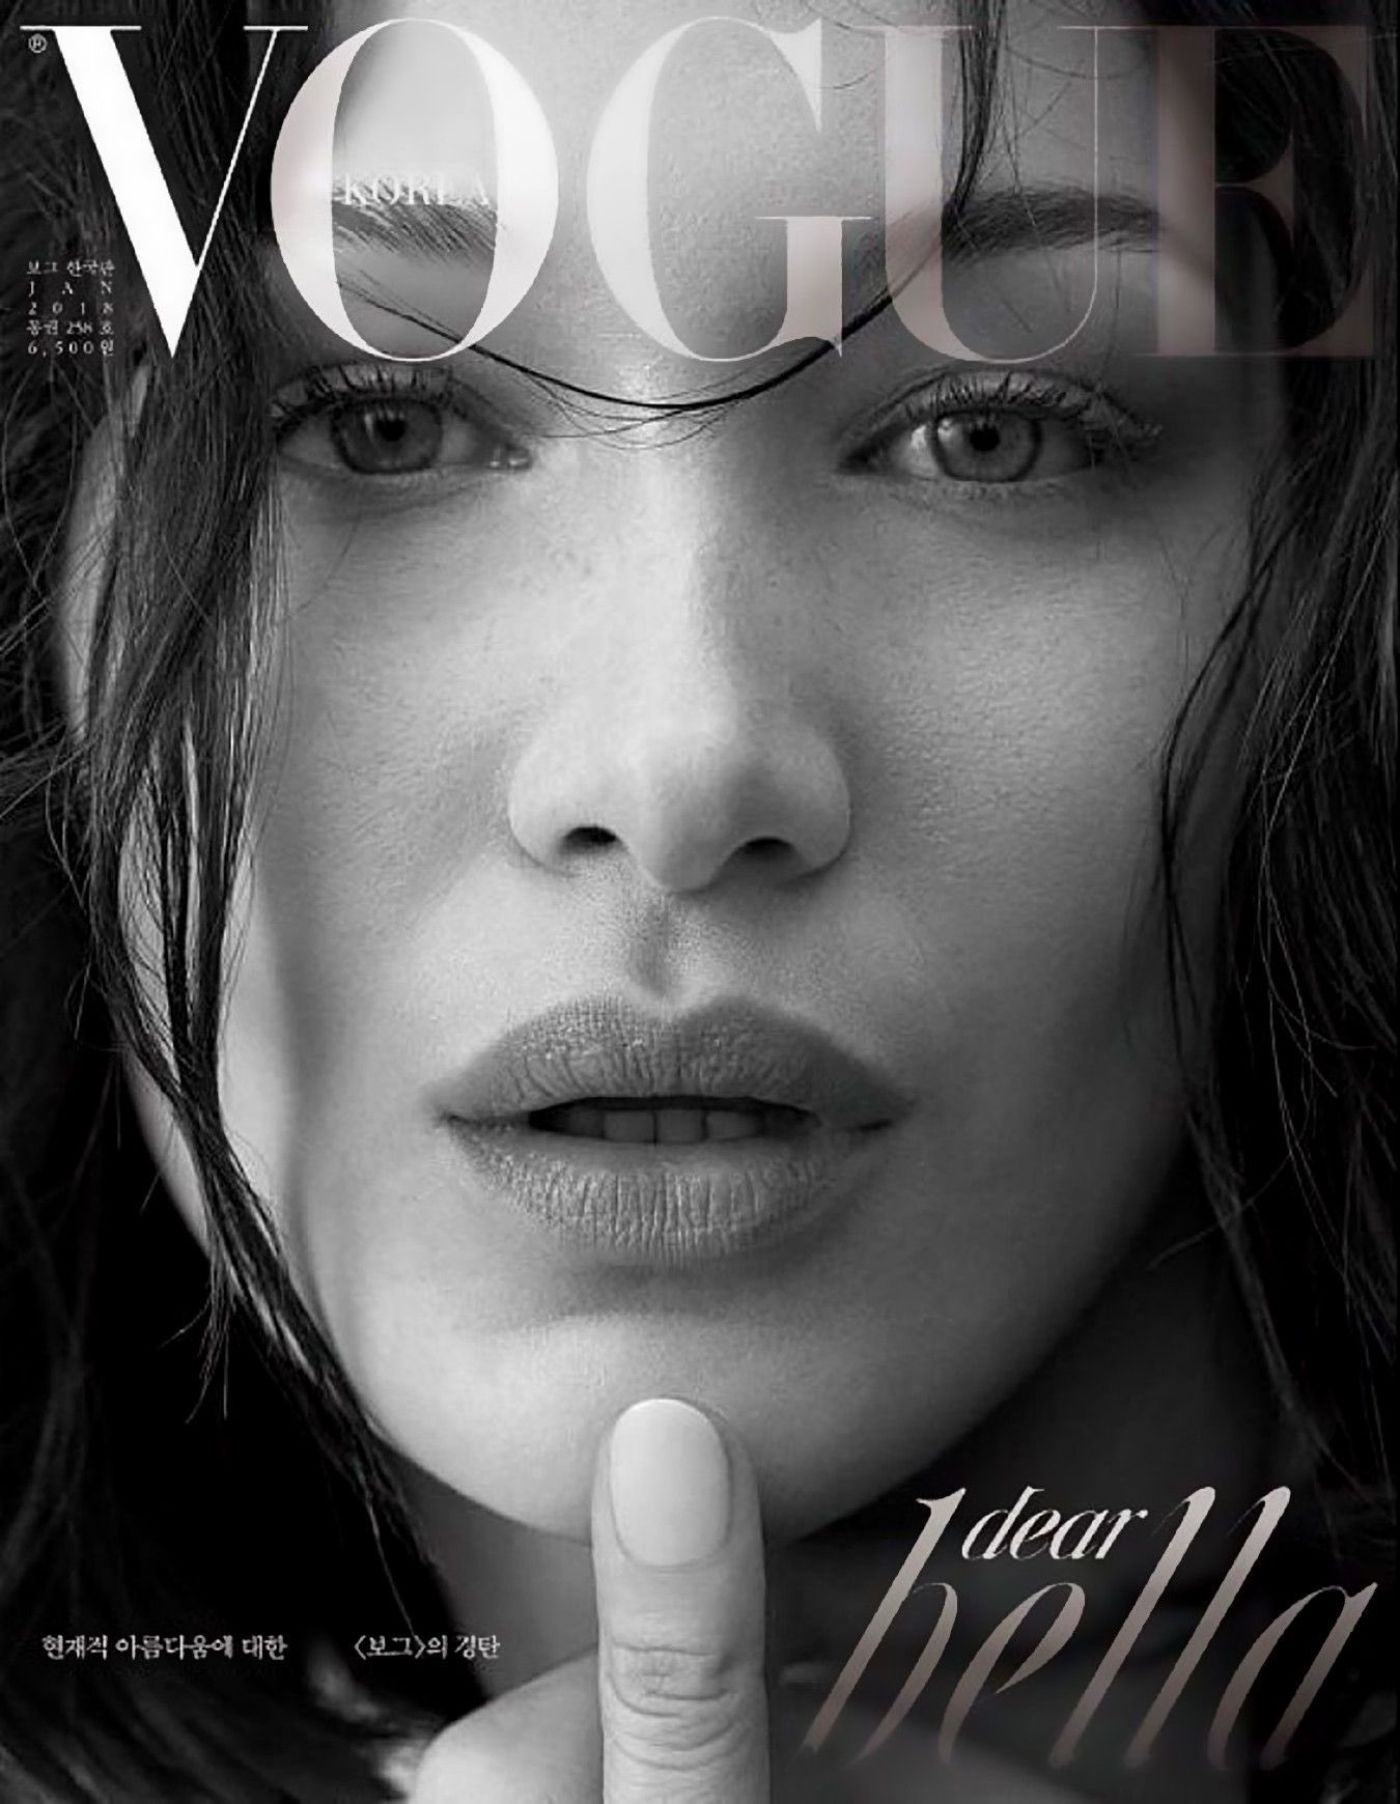 Vogue Korea August 2019 Covers (Vogue Korea)